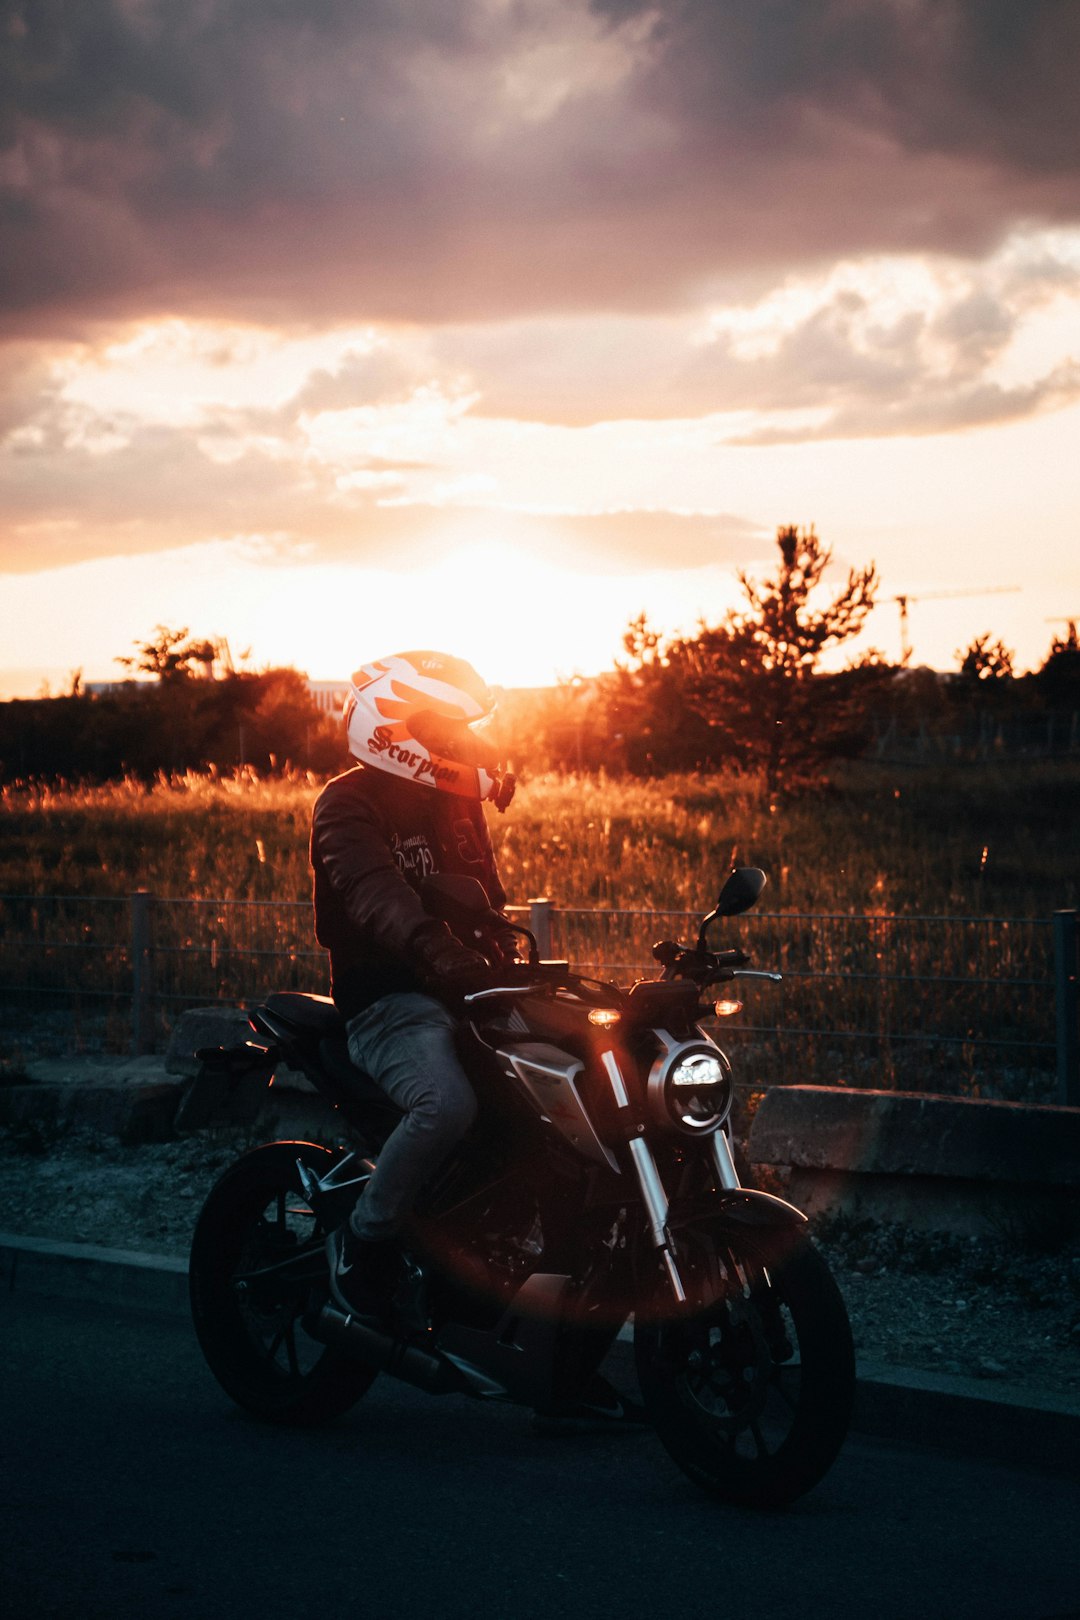 man in black jacket riding motorcycle during sunset